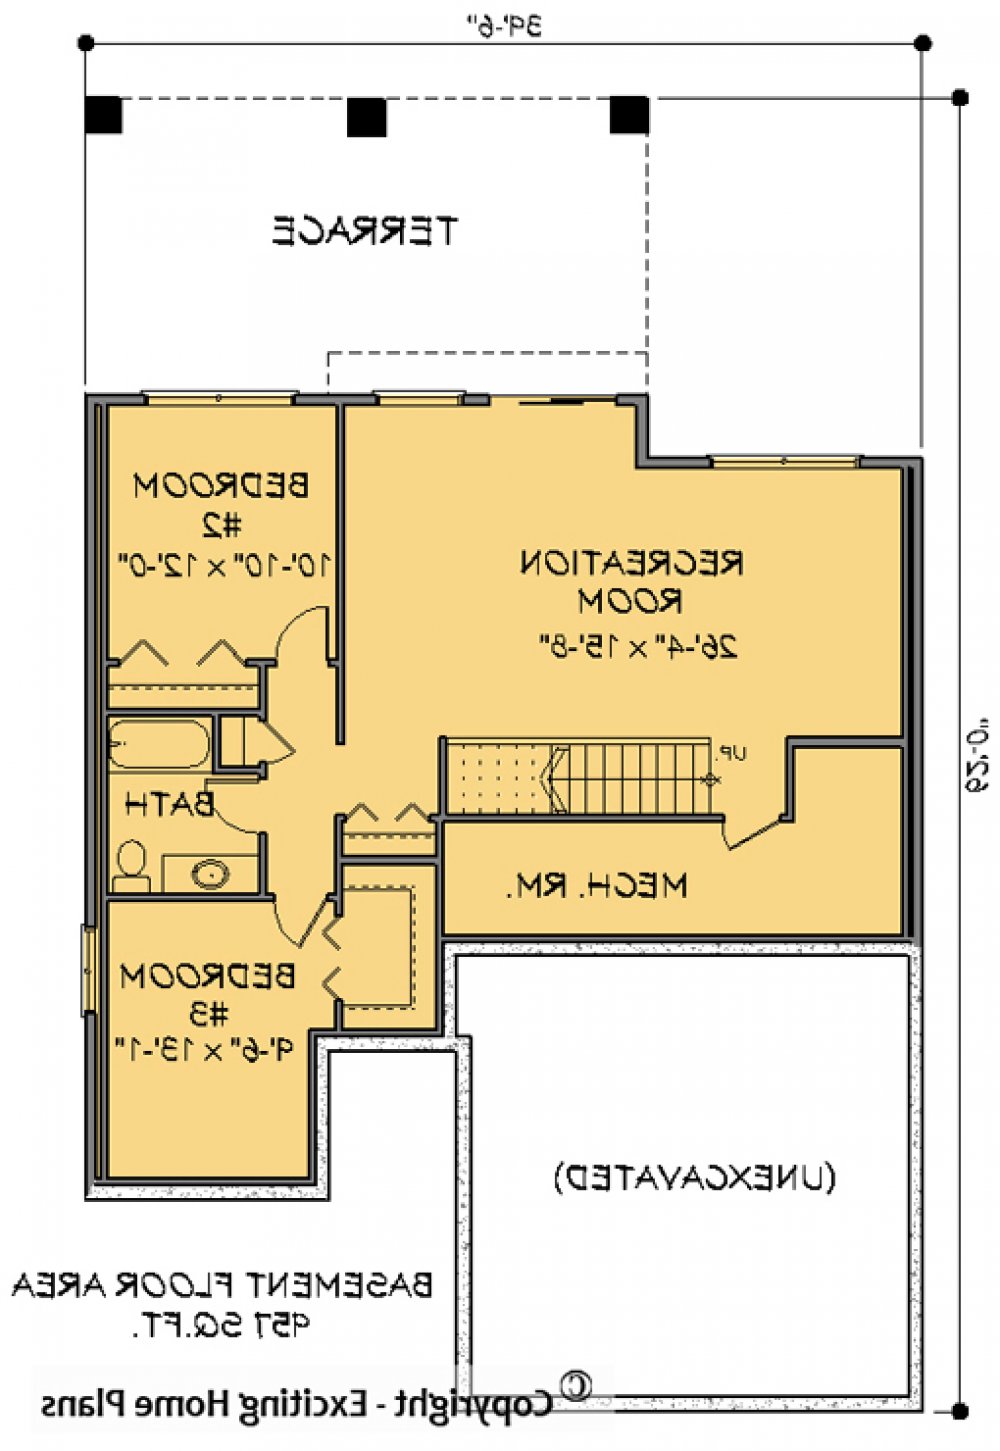 House Plan E1136-10 Lower Floor Plan REVERSE